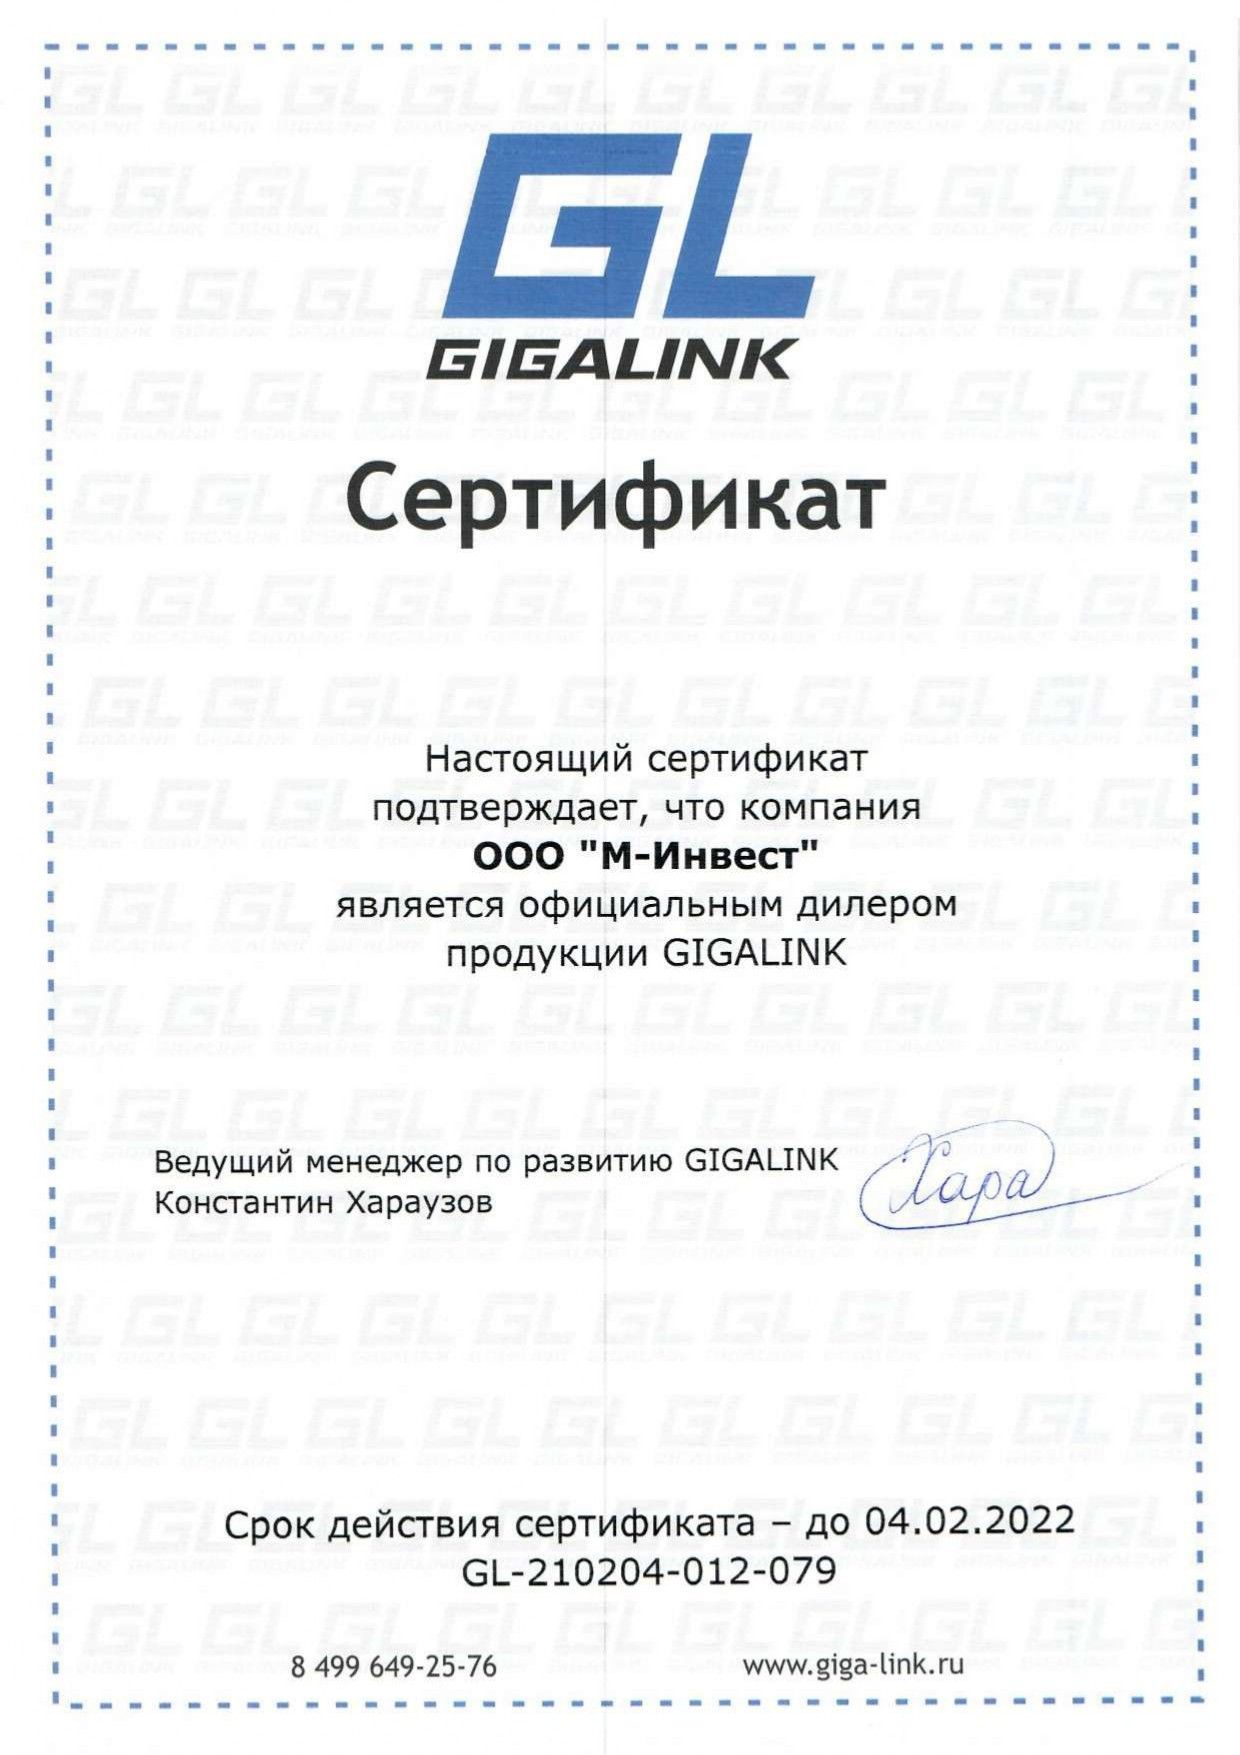 X-Com – официальный дилер продукции GIGALINK